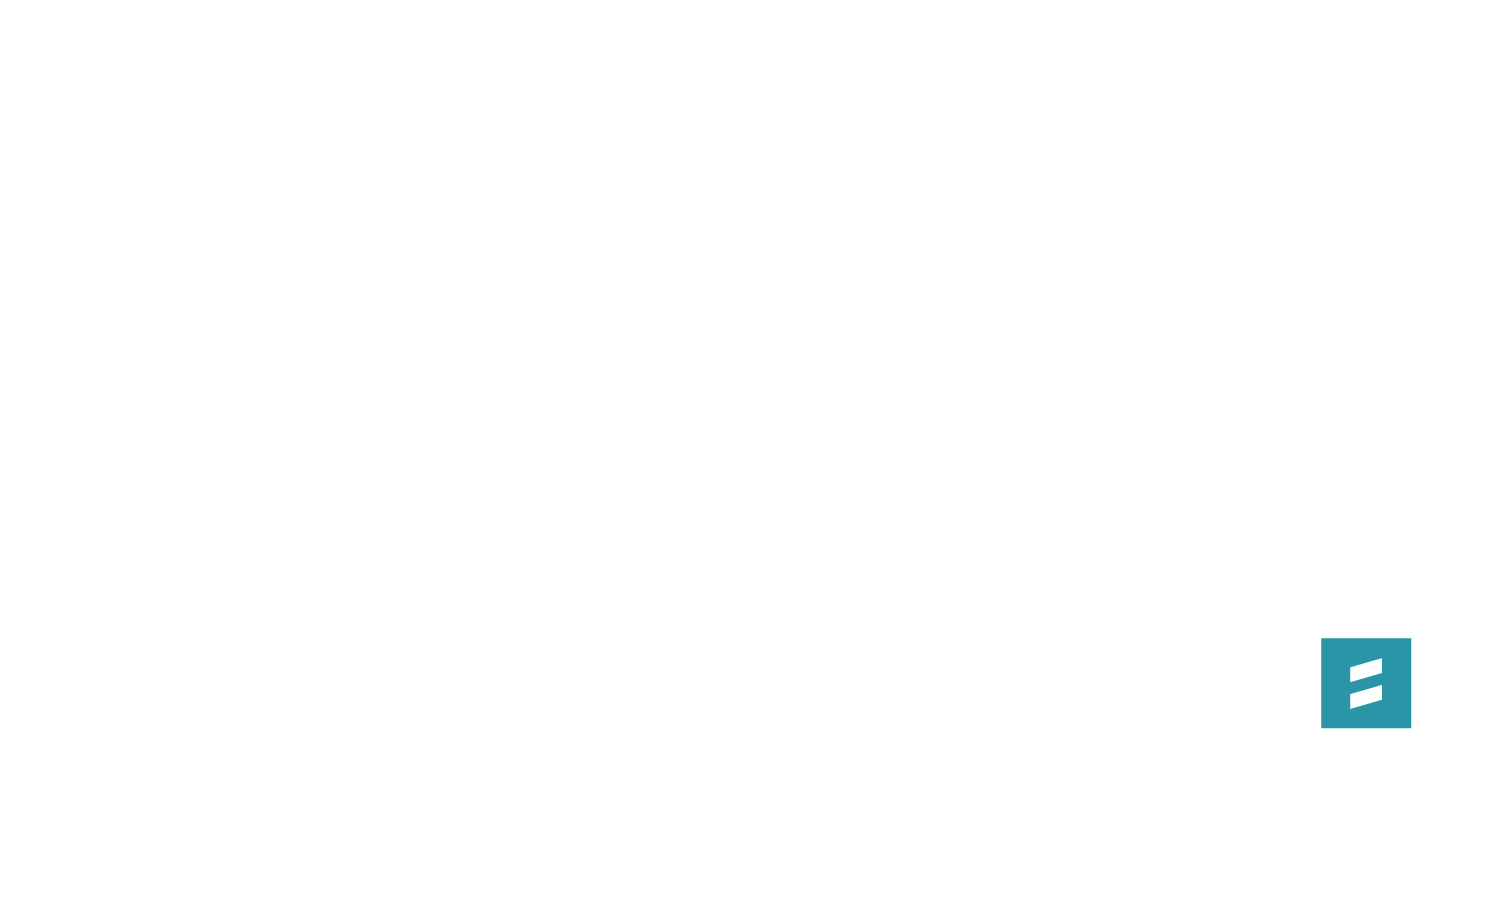 Sims Key - 5Q-Title-06-Equip-Logo-01